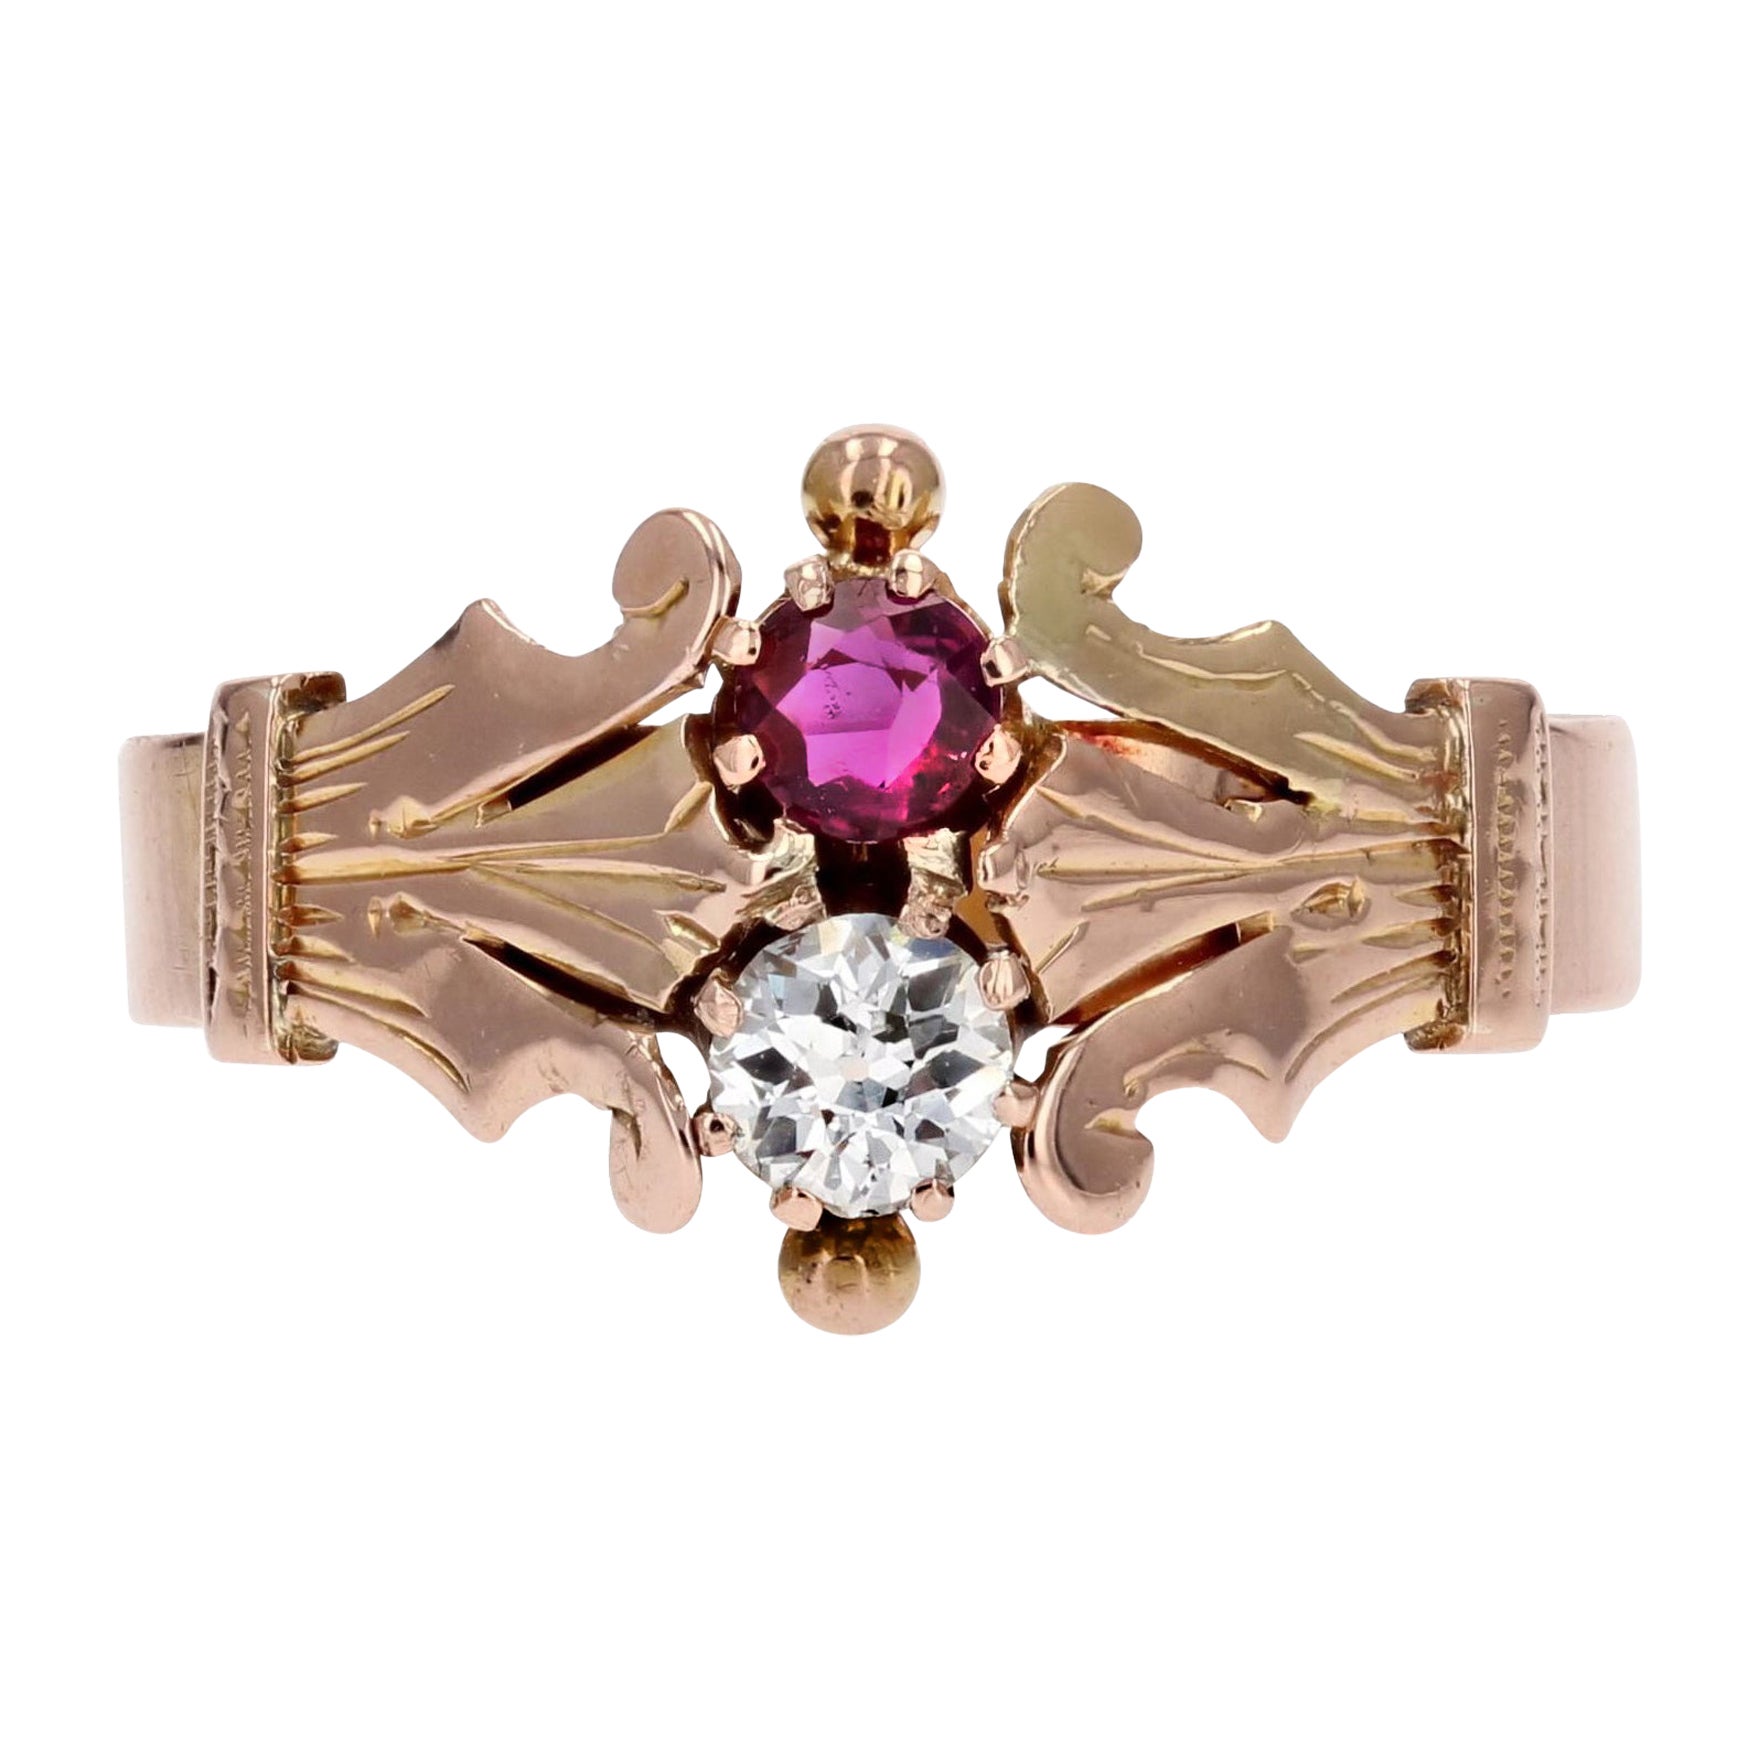 Bague "Toi et moi" en or rose 18 carats, rubis et diamant, du 19ème siècle